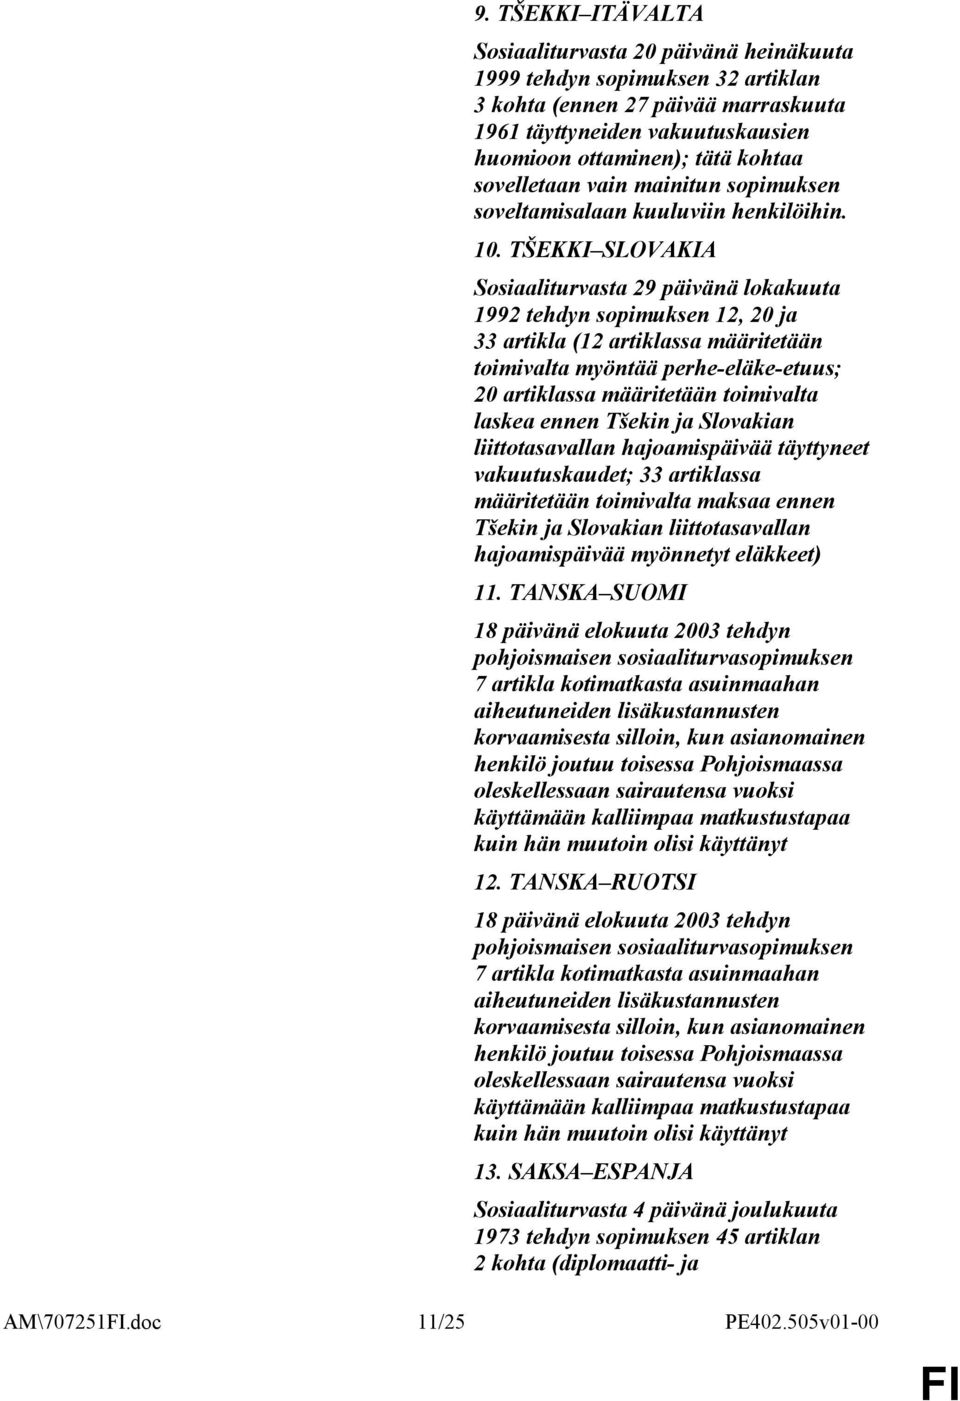 TŠEKKI SLOVAKIA Sosiaaliturvasta 29 päivänä lokakuuta 1992 tehdyn sopimuksen 12, 20 ja 33 artikla (12 artiklassa määritetään toimivalta myöntää perhe-eläke-etuus; 20 artiklassa määritetään toimivalta